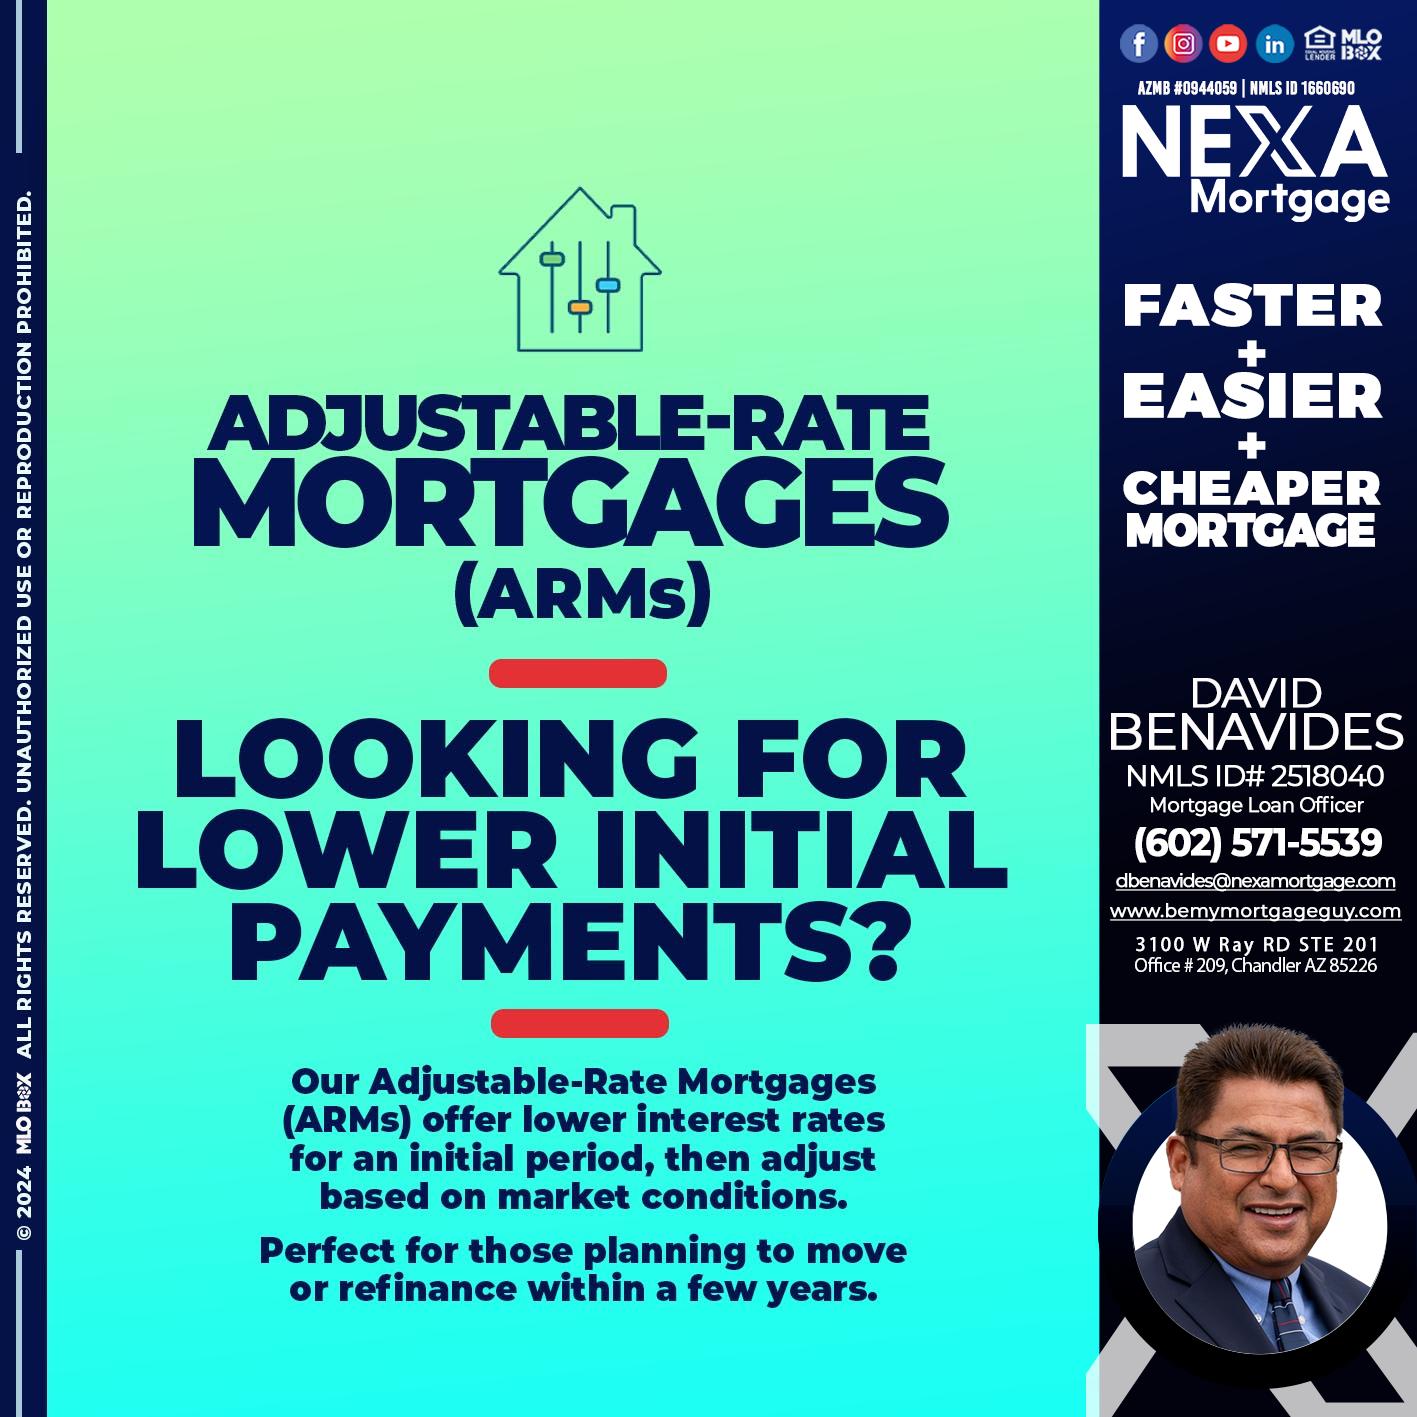 ADJUSTABLE RATES - David Benavides -Mortgage Loan Officer